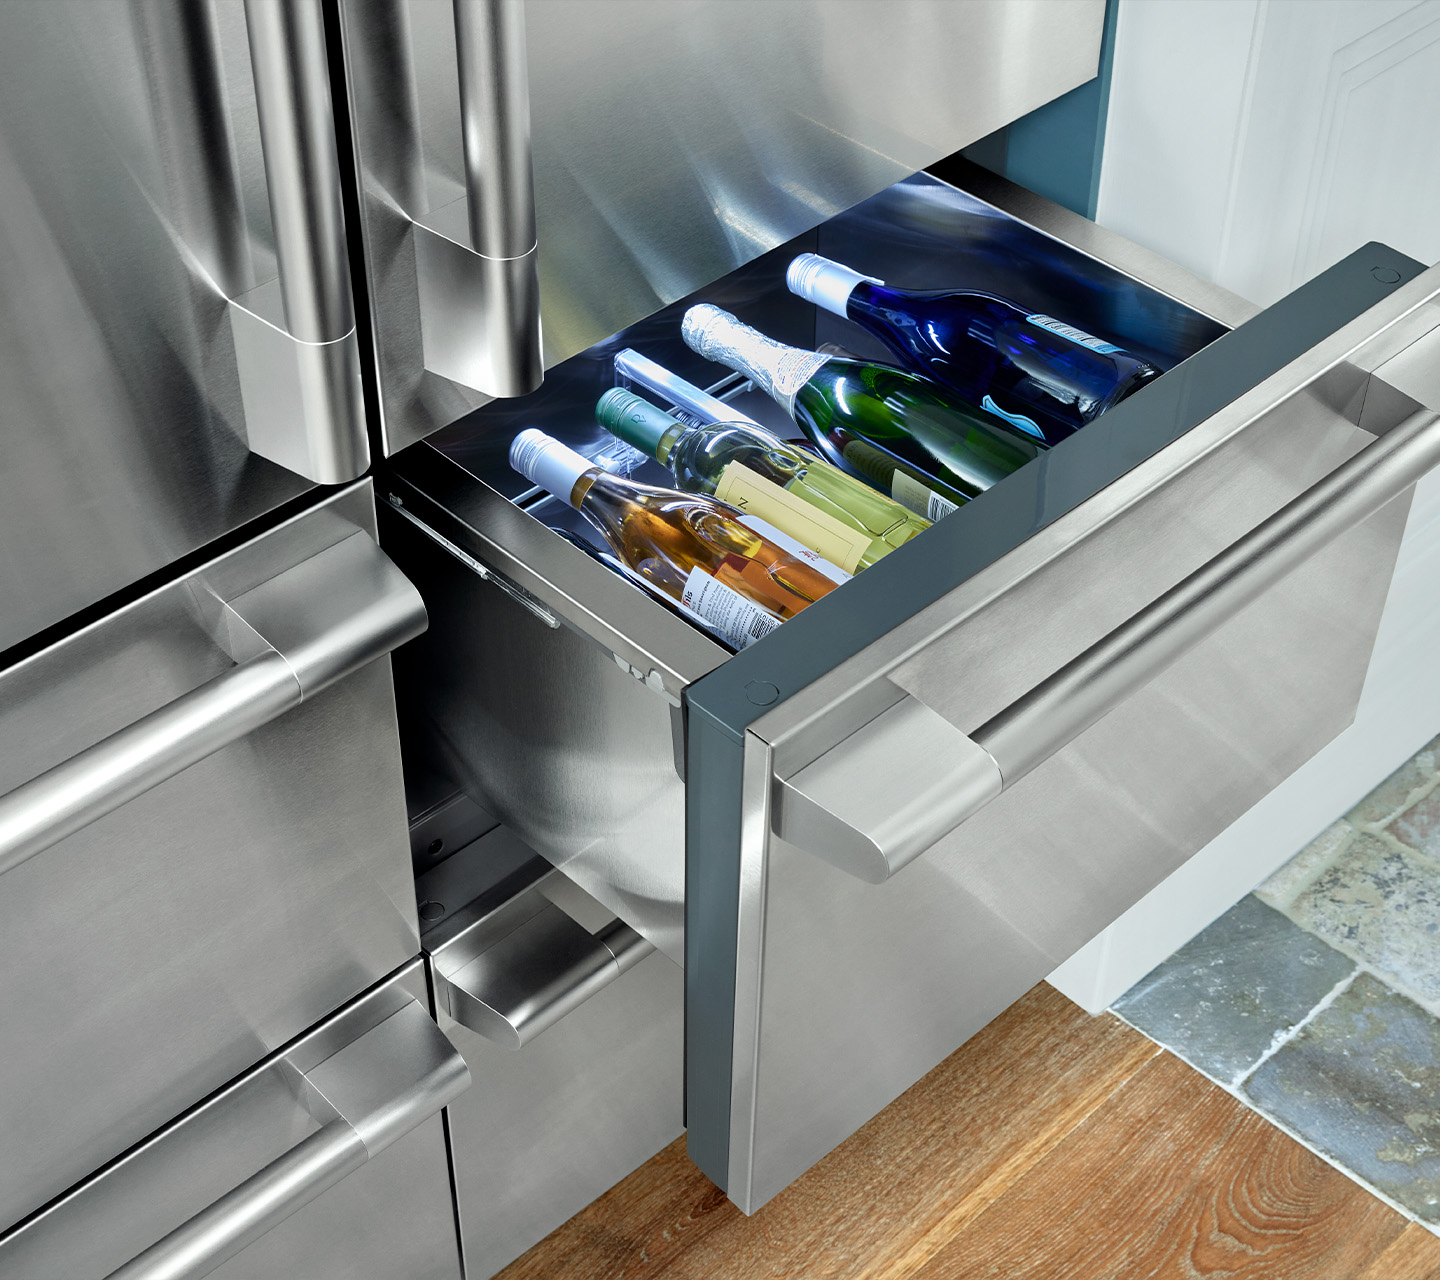 8 Best Refrigerator French Door for 2023